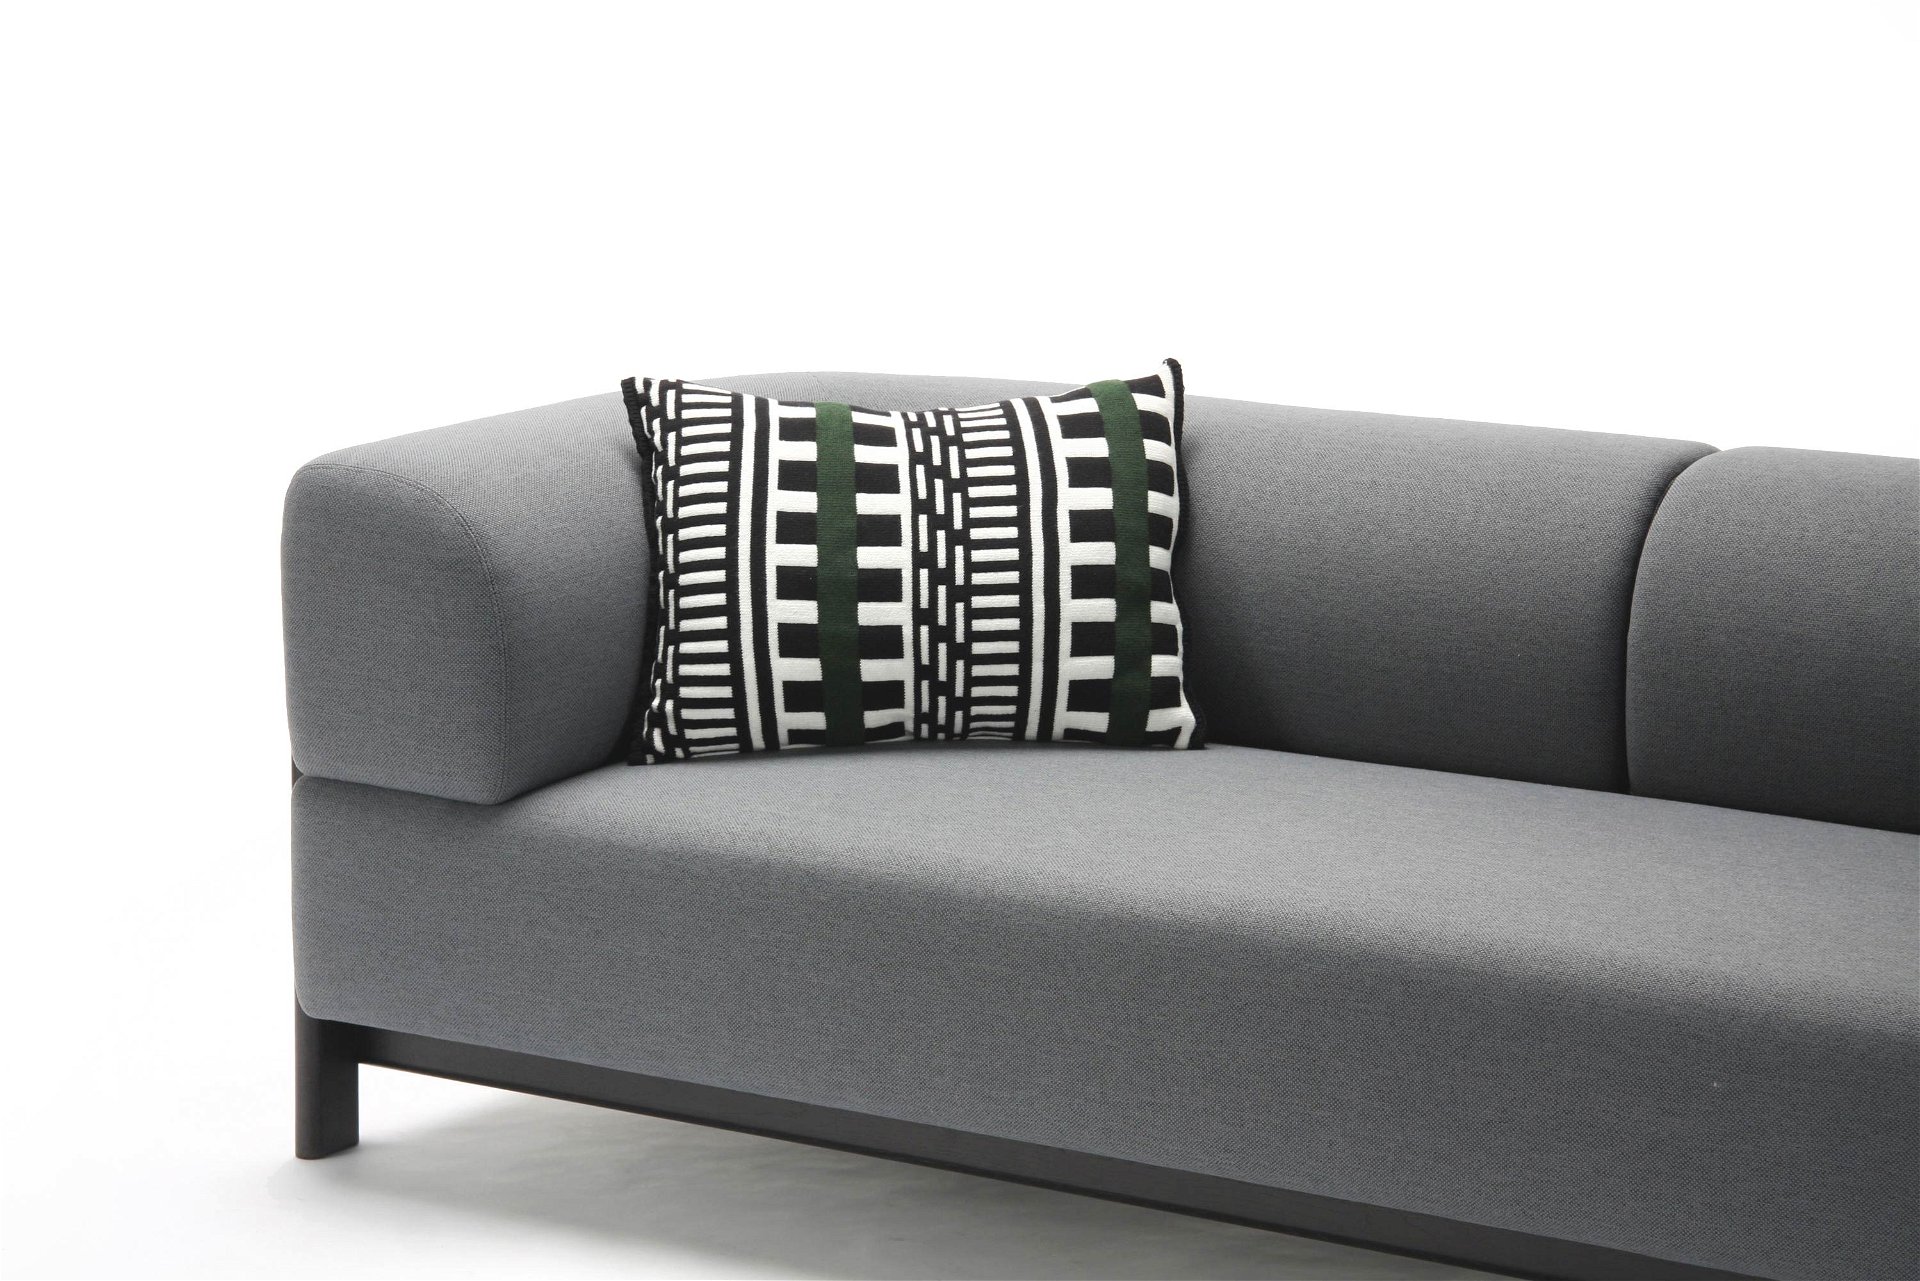 Tiefsitzer: Bodennahe Eleganz zeigt das formvollendete Sofa »Elephant« mit dem passenden Zierkissen »Stripes«.   